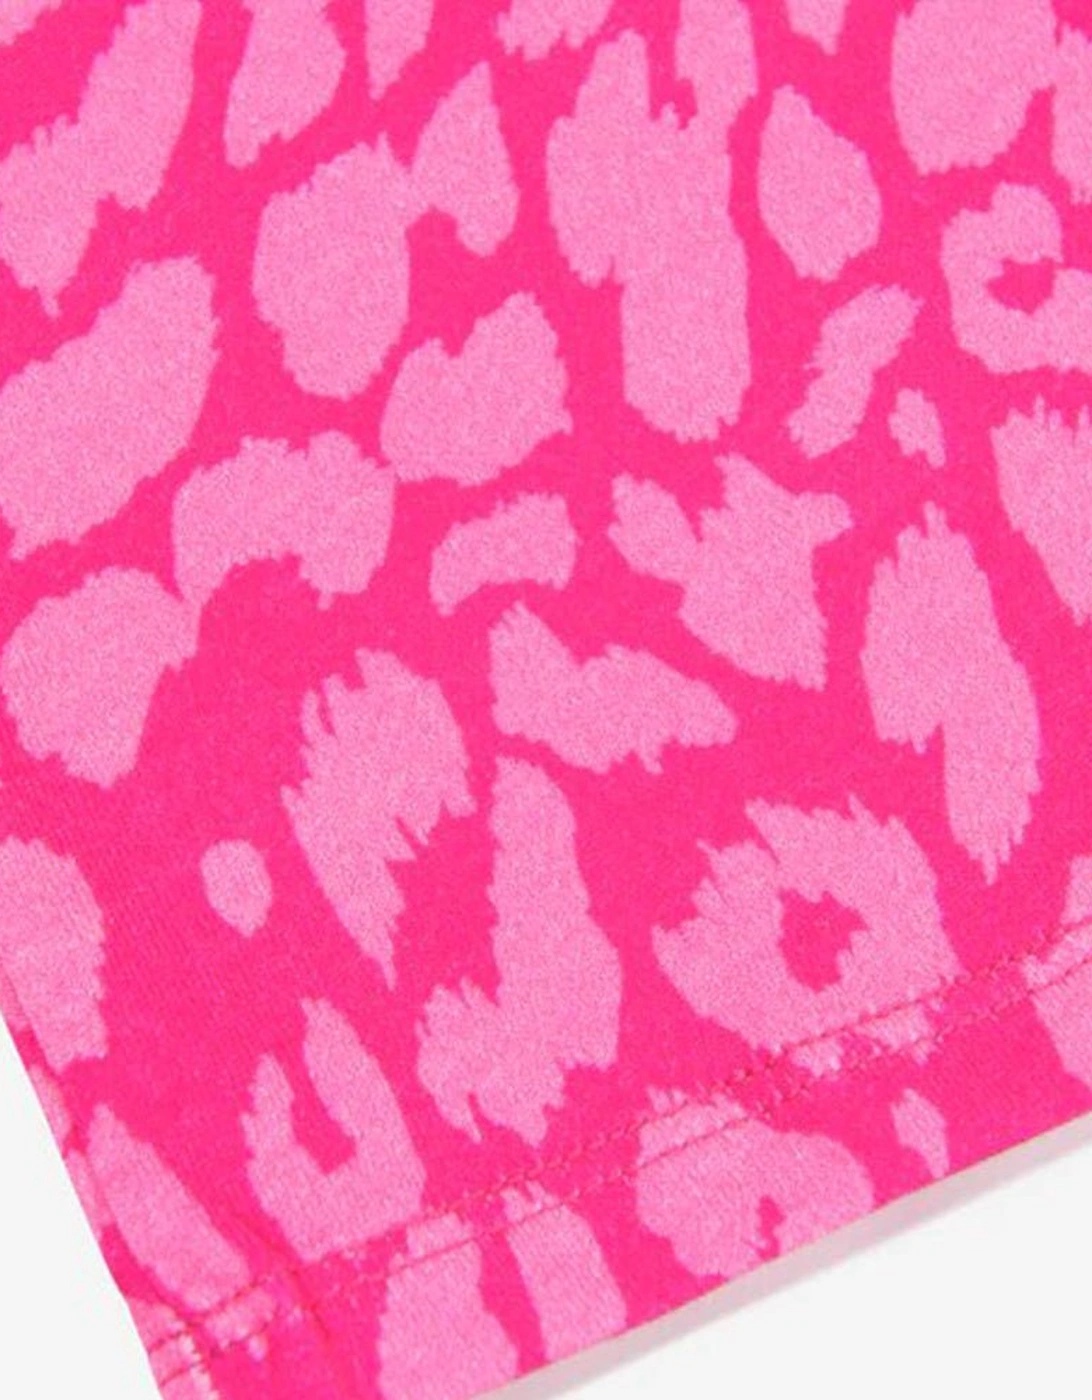 Girls Leopard Print T-shirt Pink